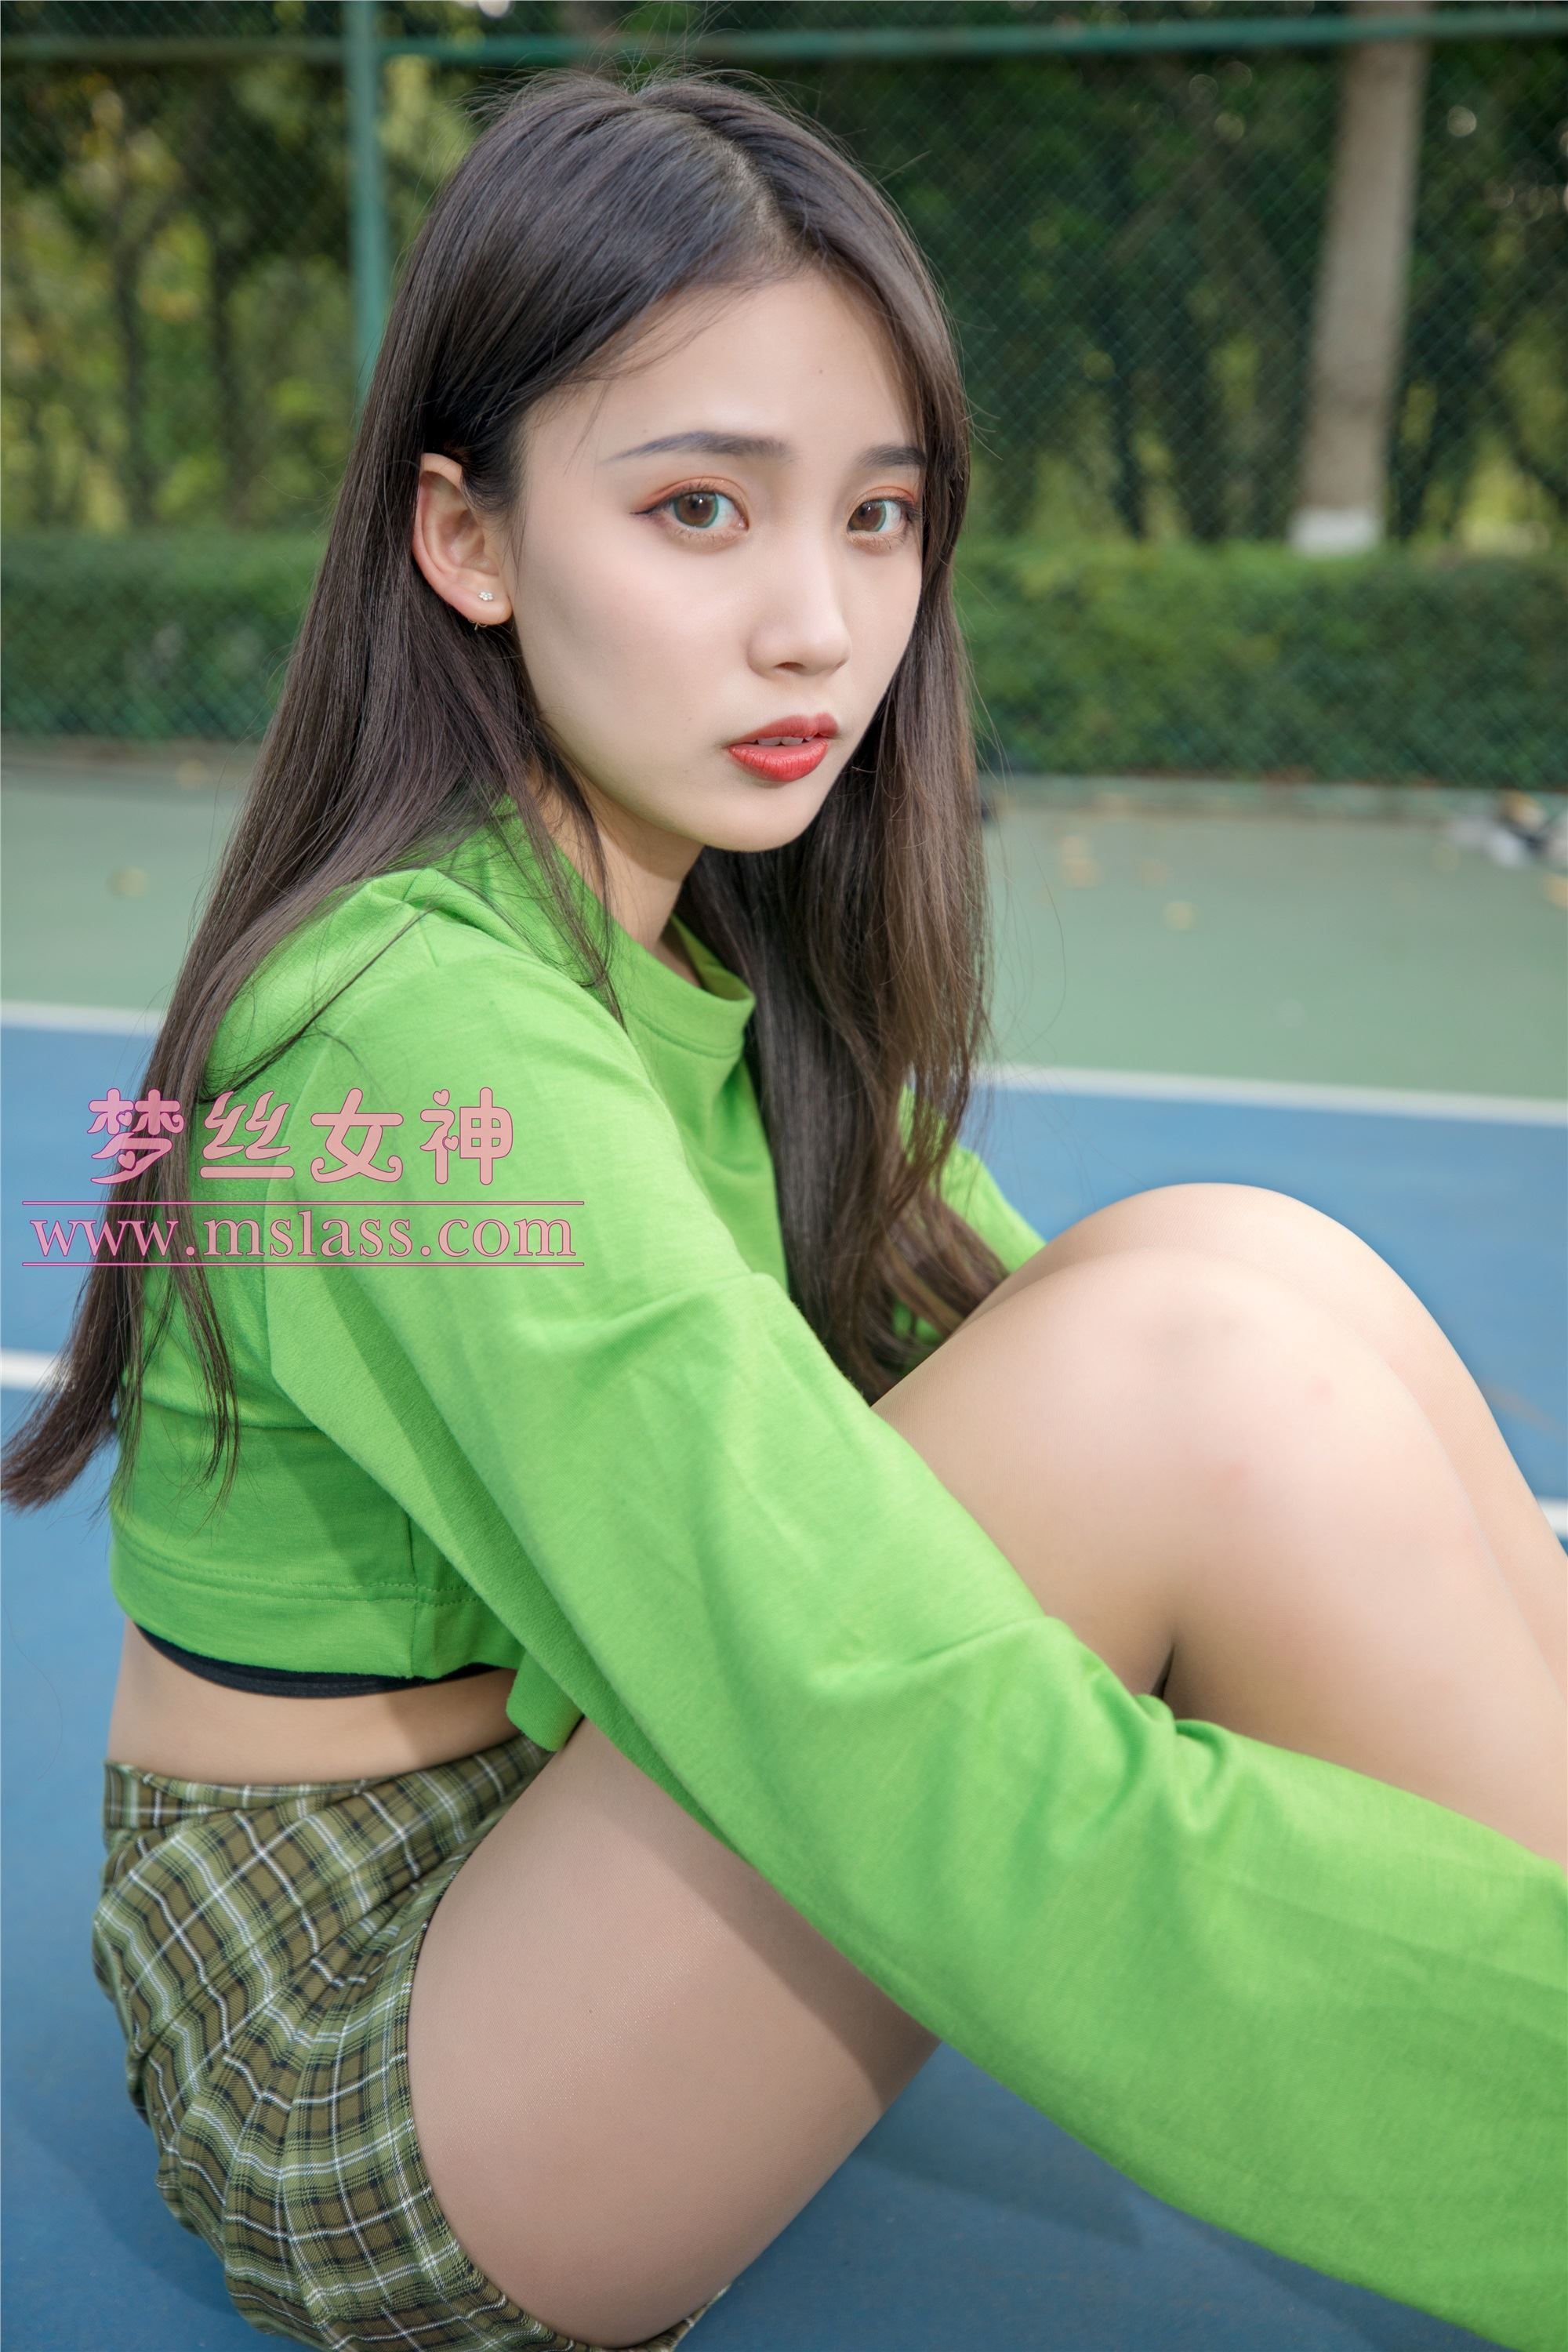 Mslass goddess of dream silk - xiangxuan tennis girl